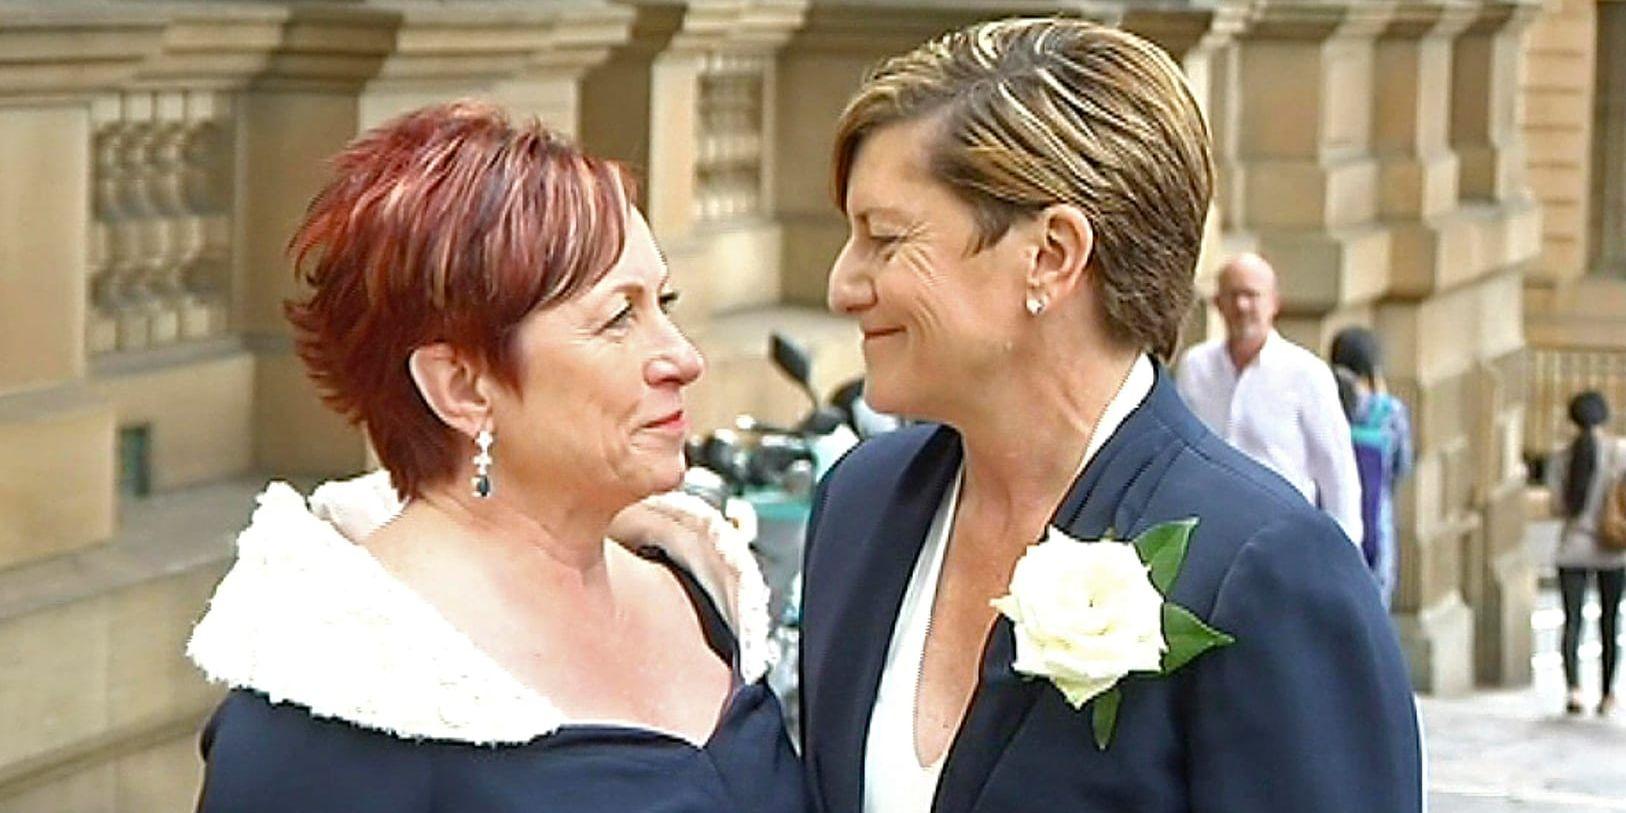 Christine Forster, syster till Australiens tidigare premiärminister Tony Abbot, gifter sig med sin partner Virgina Edwards i februari 2018. Australiens parlament godkände en könsneutral äktenskapslagstiftning i december 2017. Arkivbild.